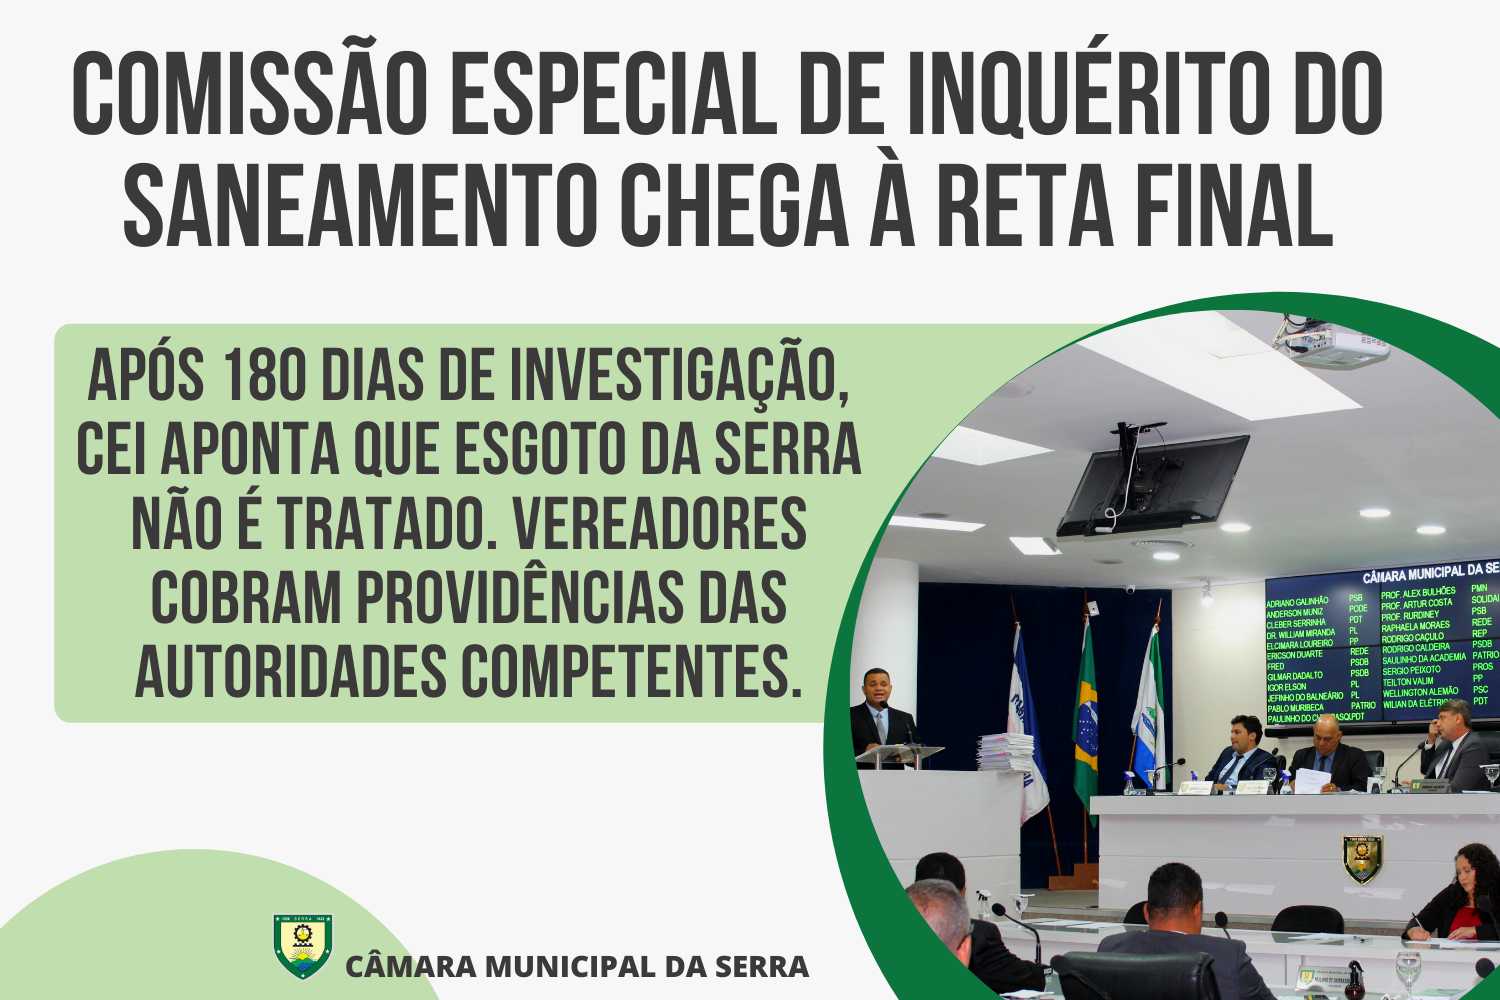 Após 180 dias de investigação, CEI aponta que esgoto da Serra não é tratado. Vereadores cobram providências das autoridades competentes.